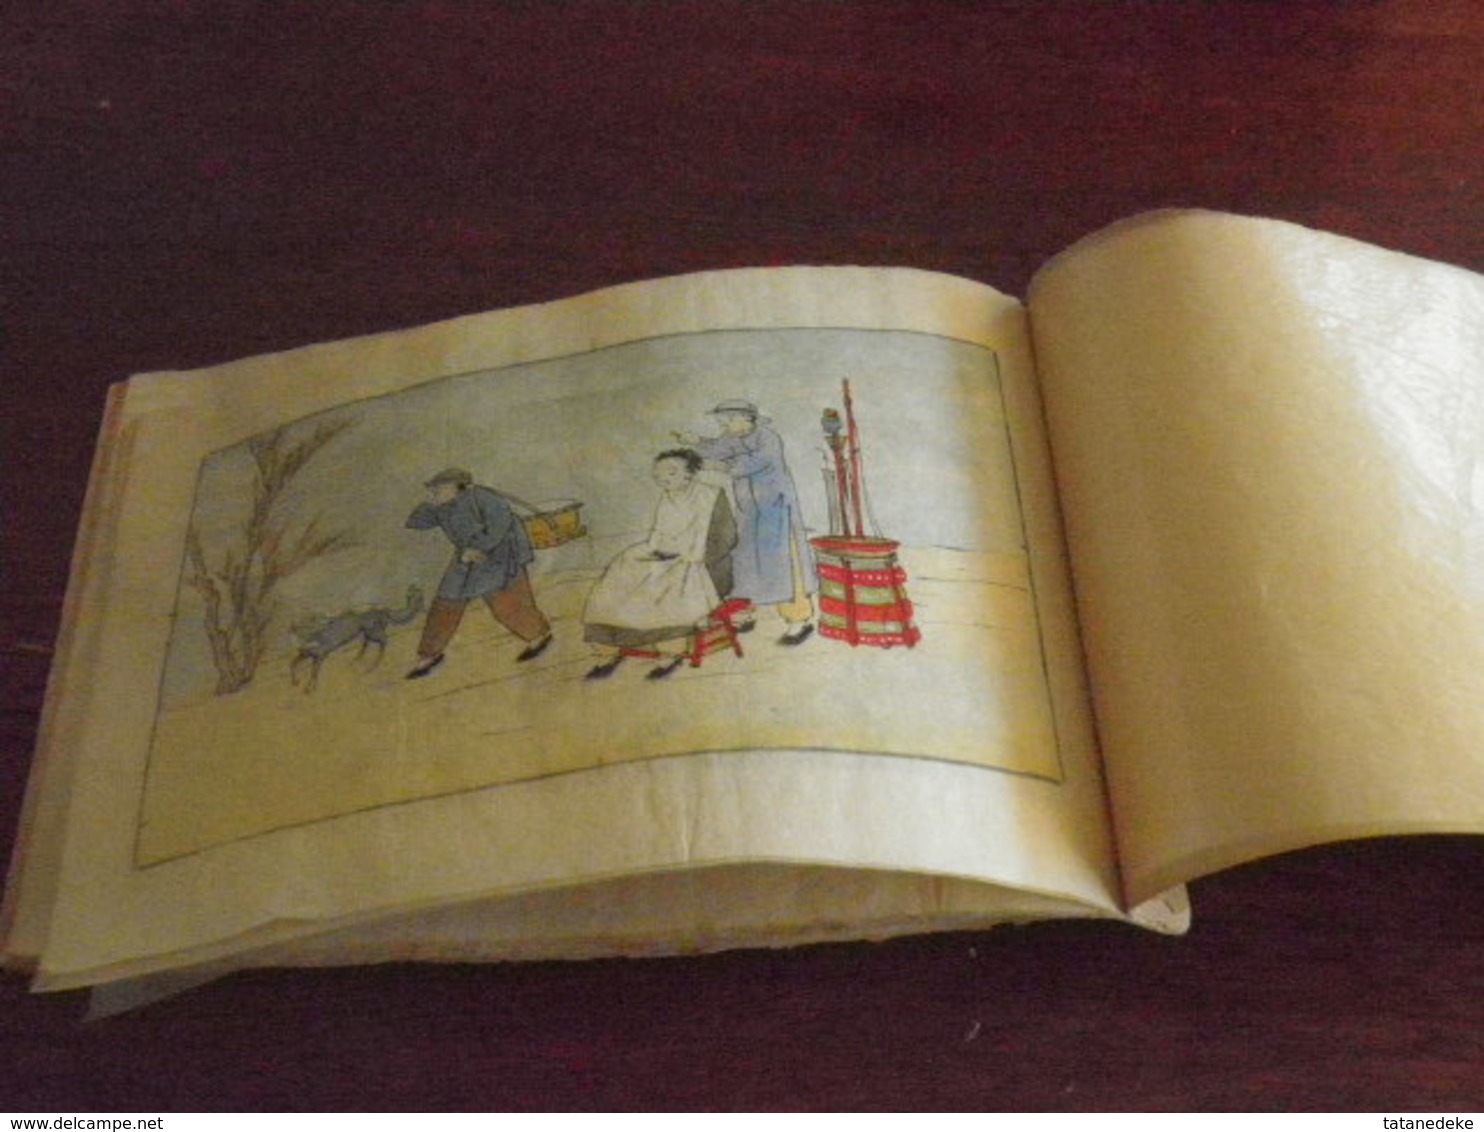 CHINE - CHINA - Ancien recueil de 12 aquarelles de métiers chinois anciens - années 1930...